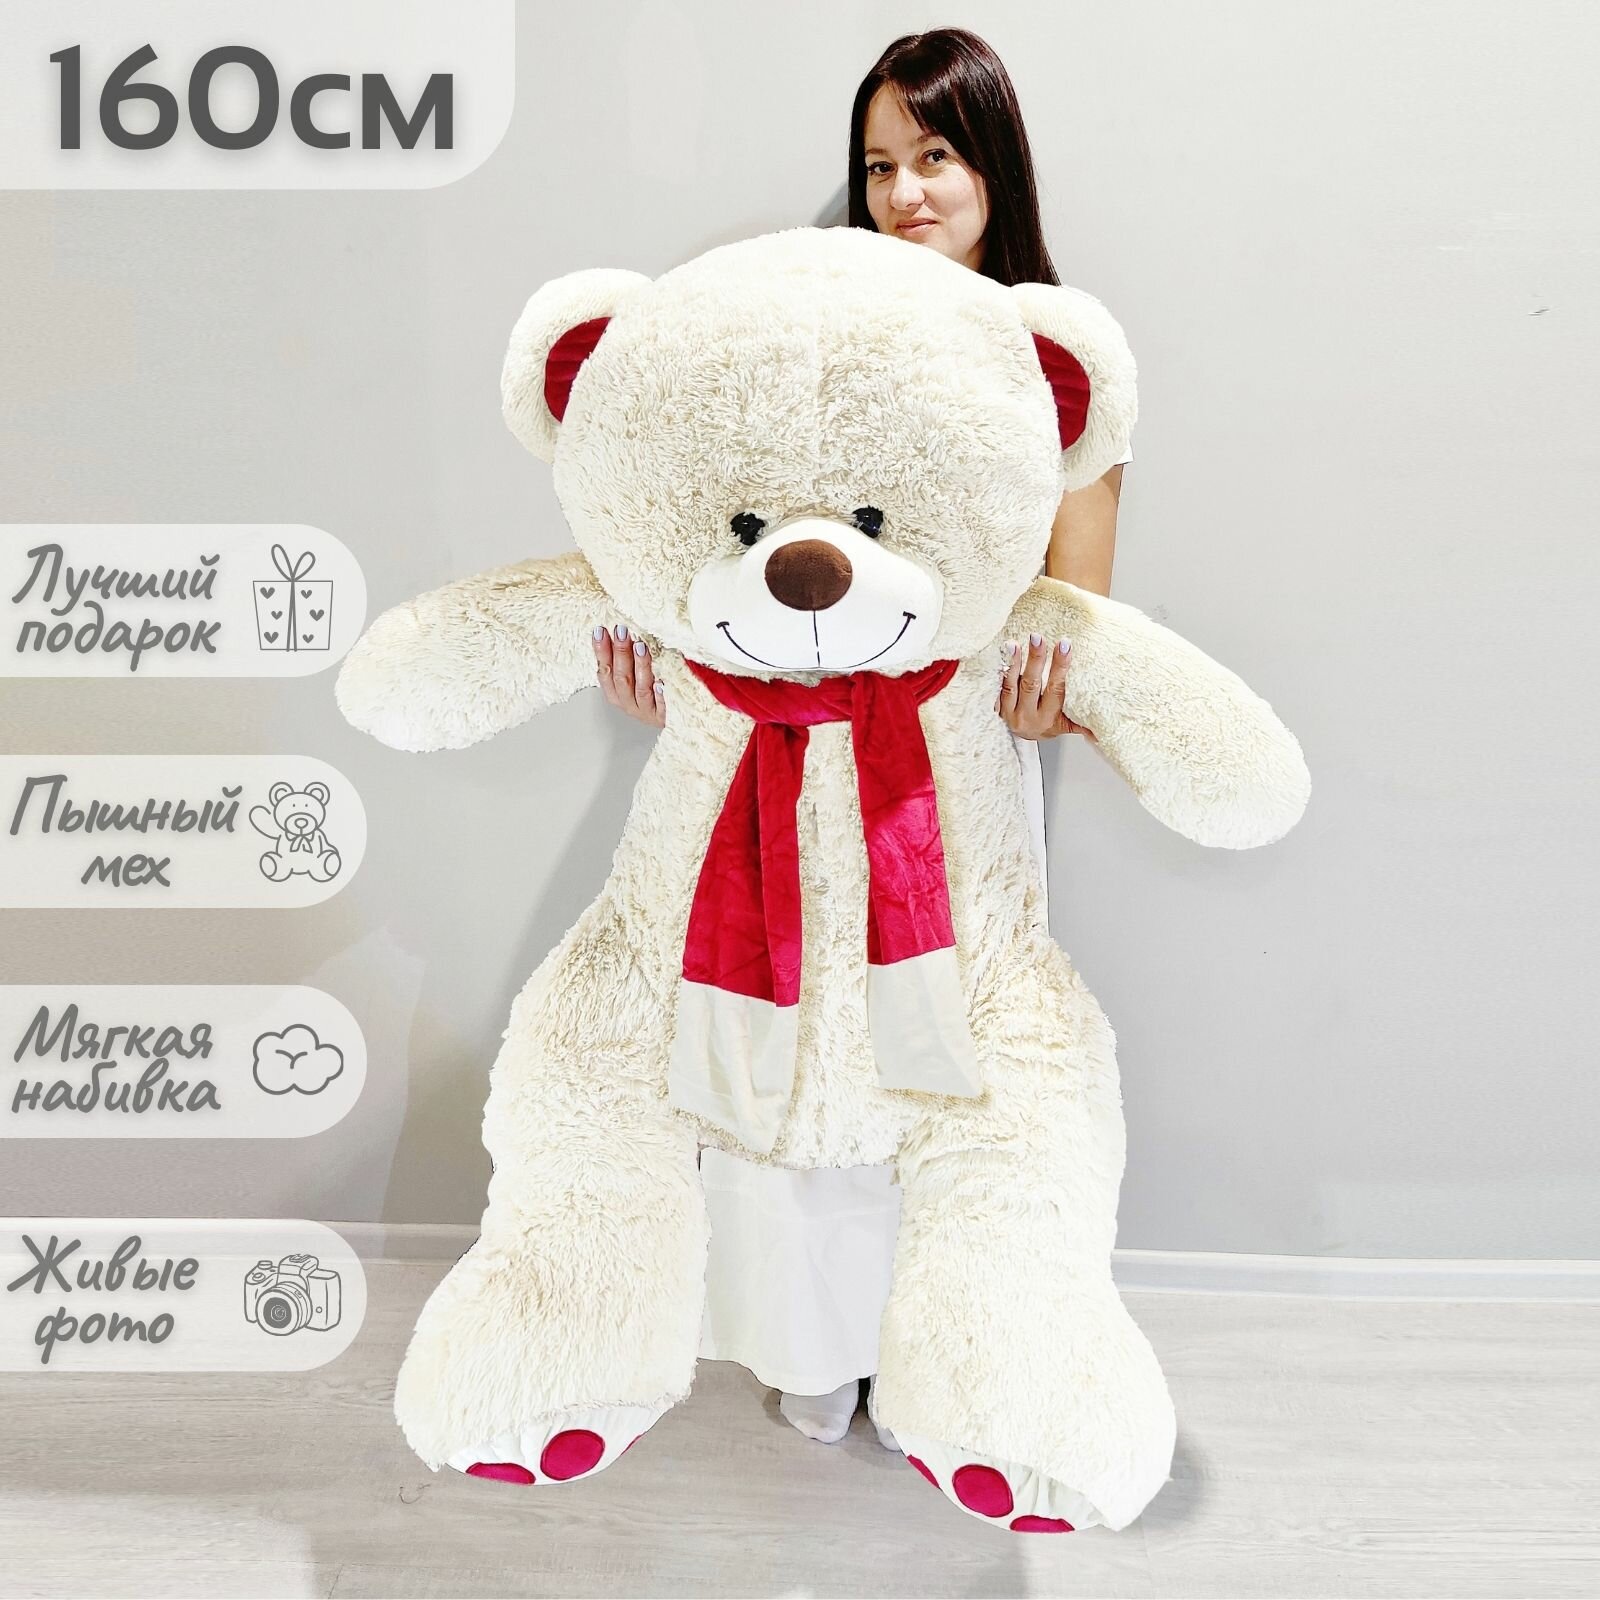 Большой плюшевый медведь, мягкая игрушка мишка Кельвин 160 см, белый кремовый